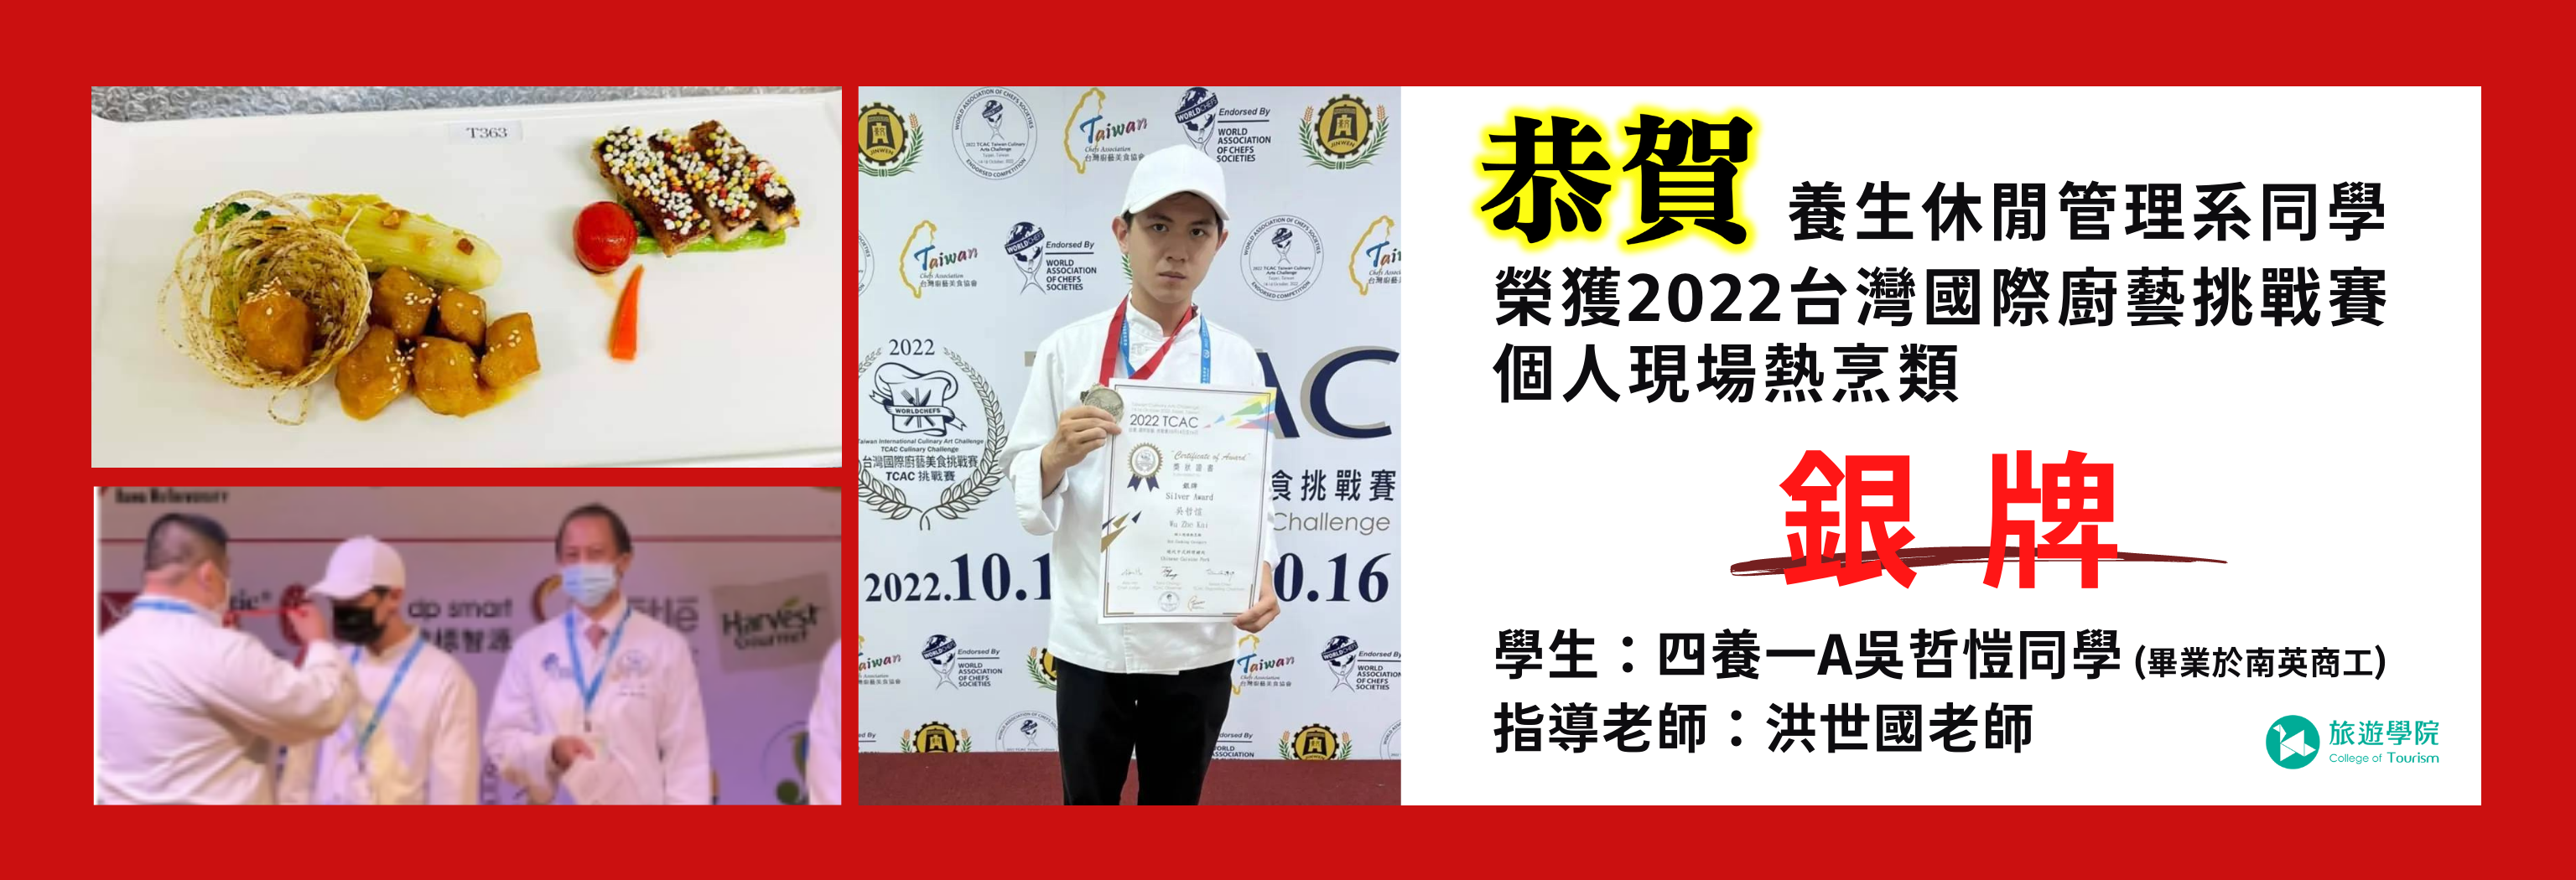 2022台灣國際廚藝挑戰賽銀牌